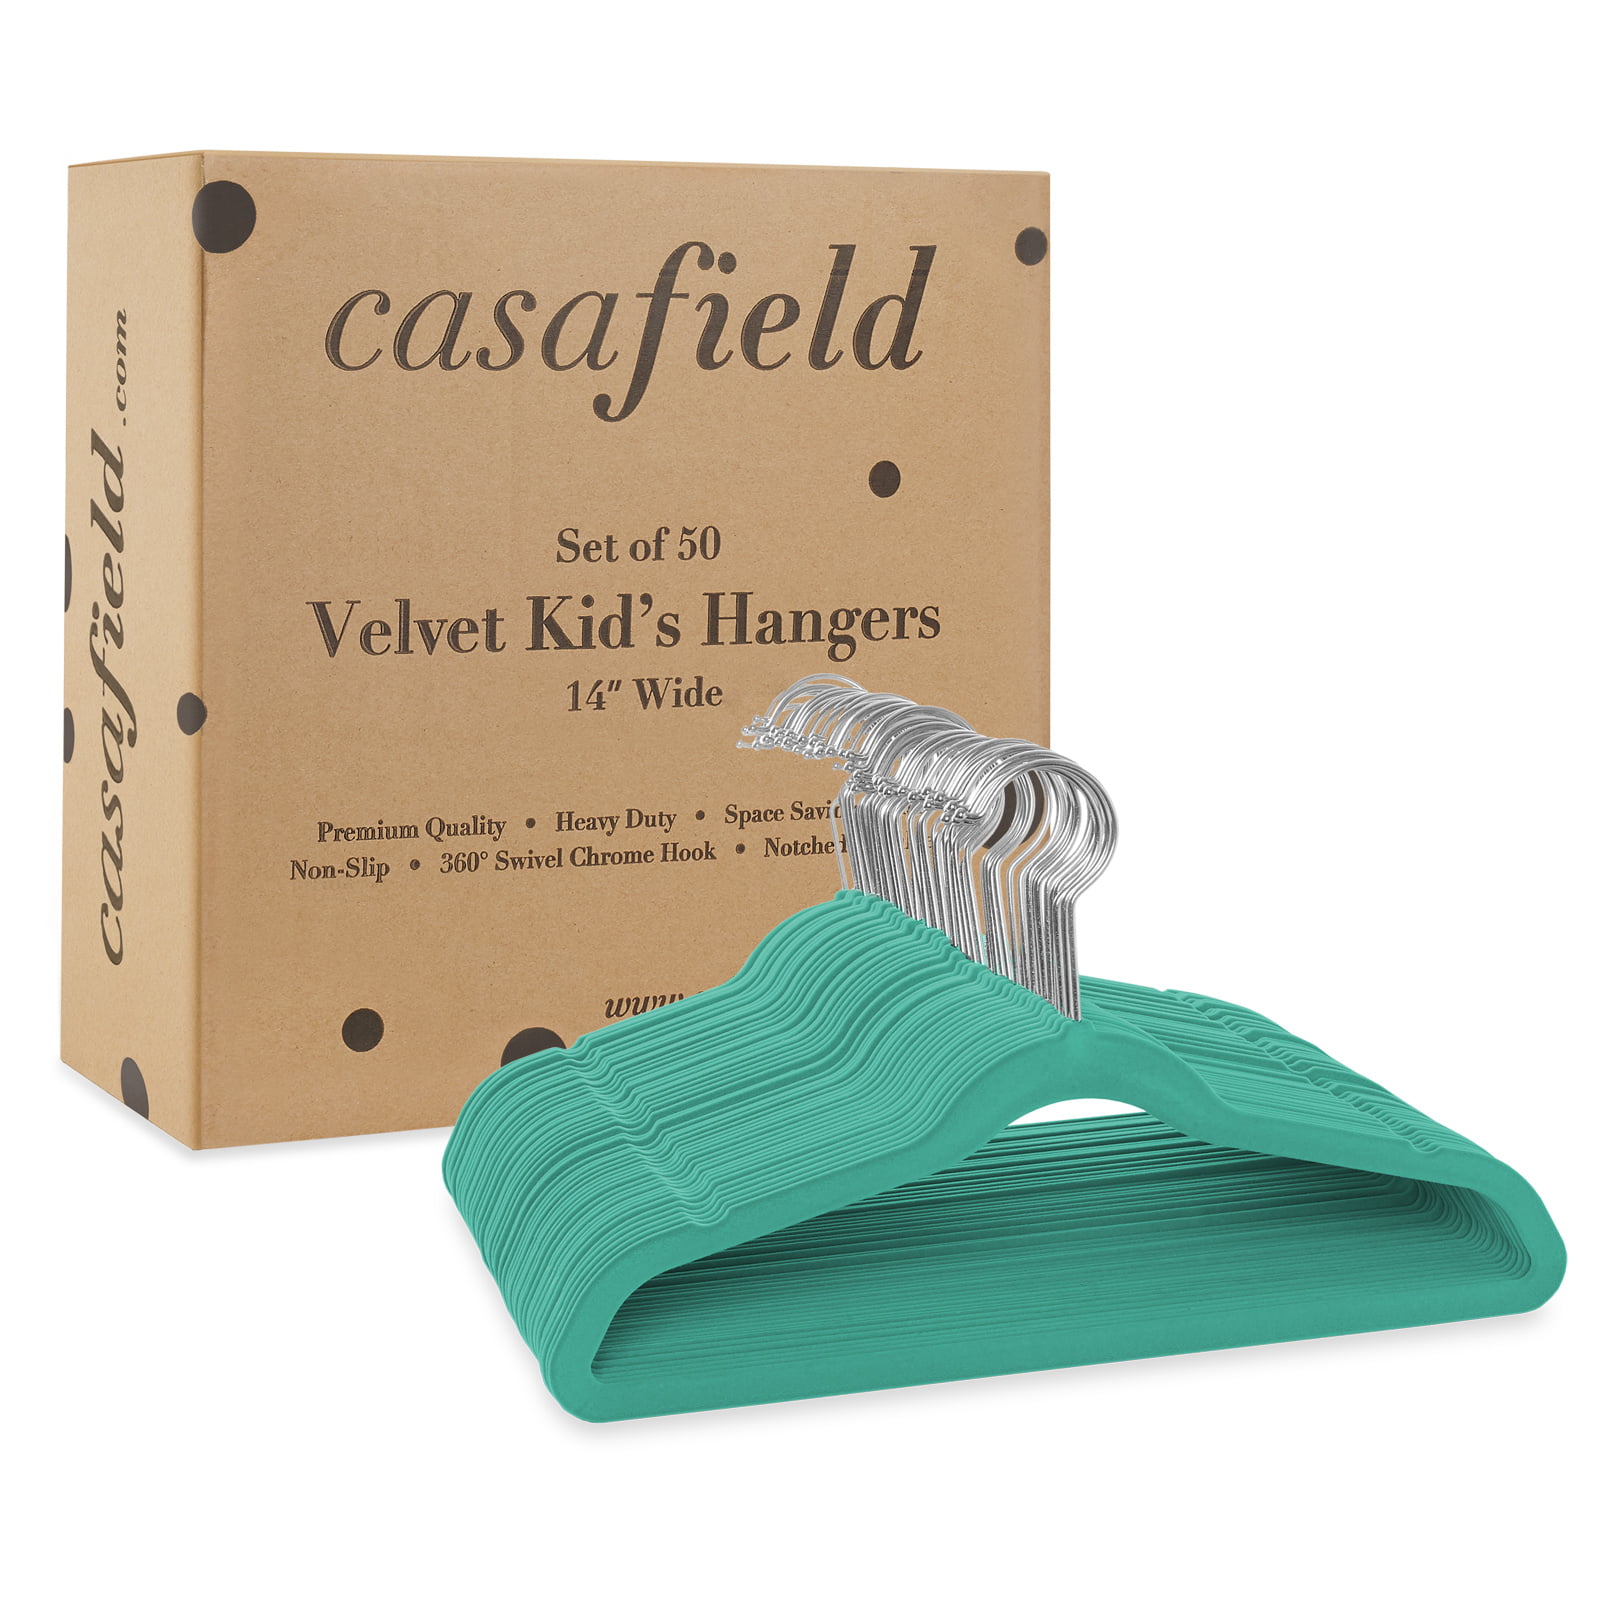 100 Teal Velvet Kid's 14 Hangers by Casafield, 14 x 8 - Harris Teeter